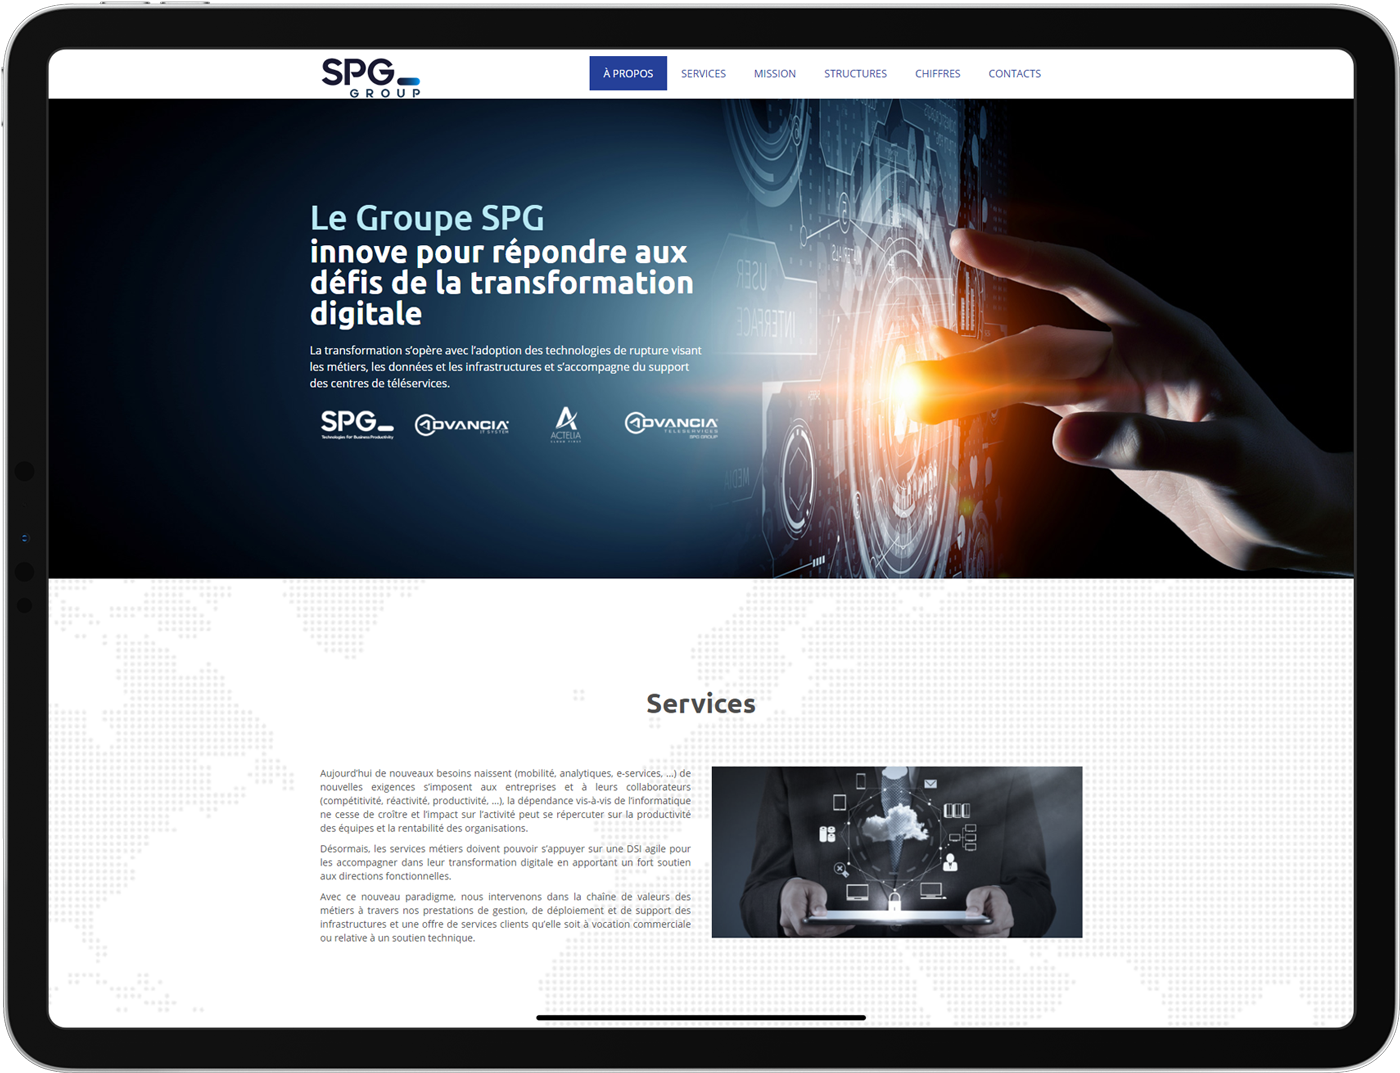 spg groupe com 75cdb93a Agence Web Joomla